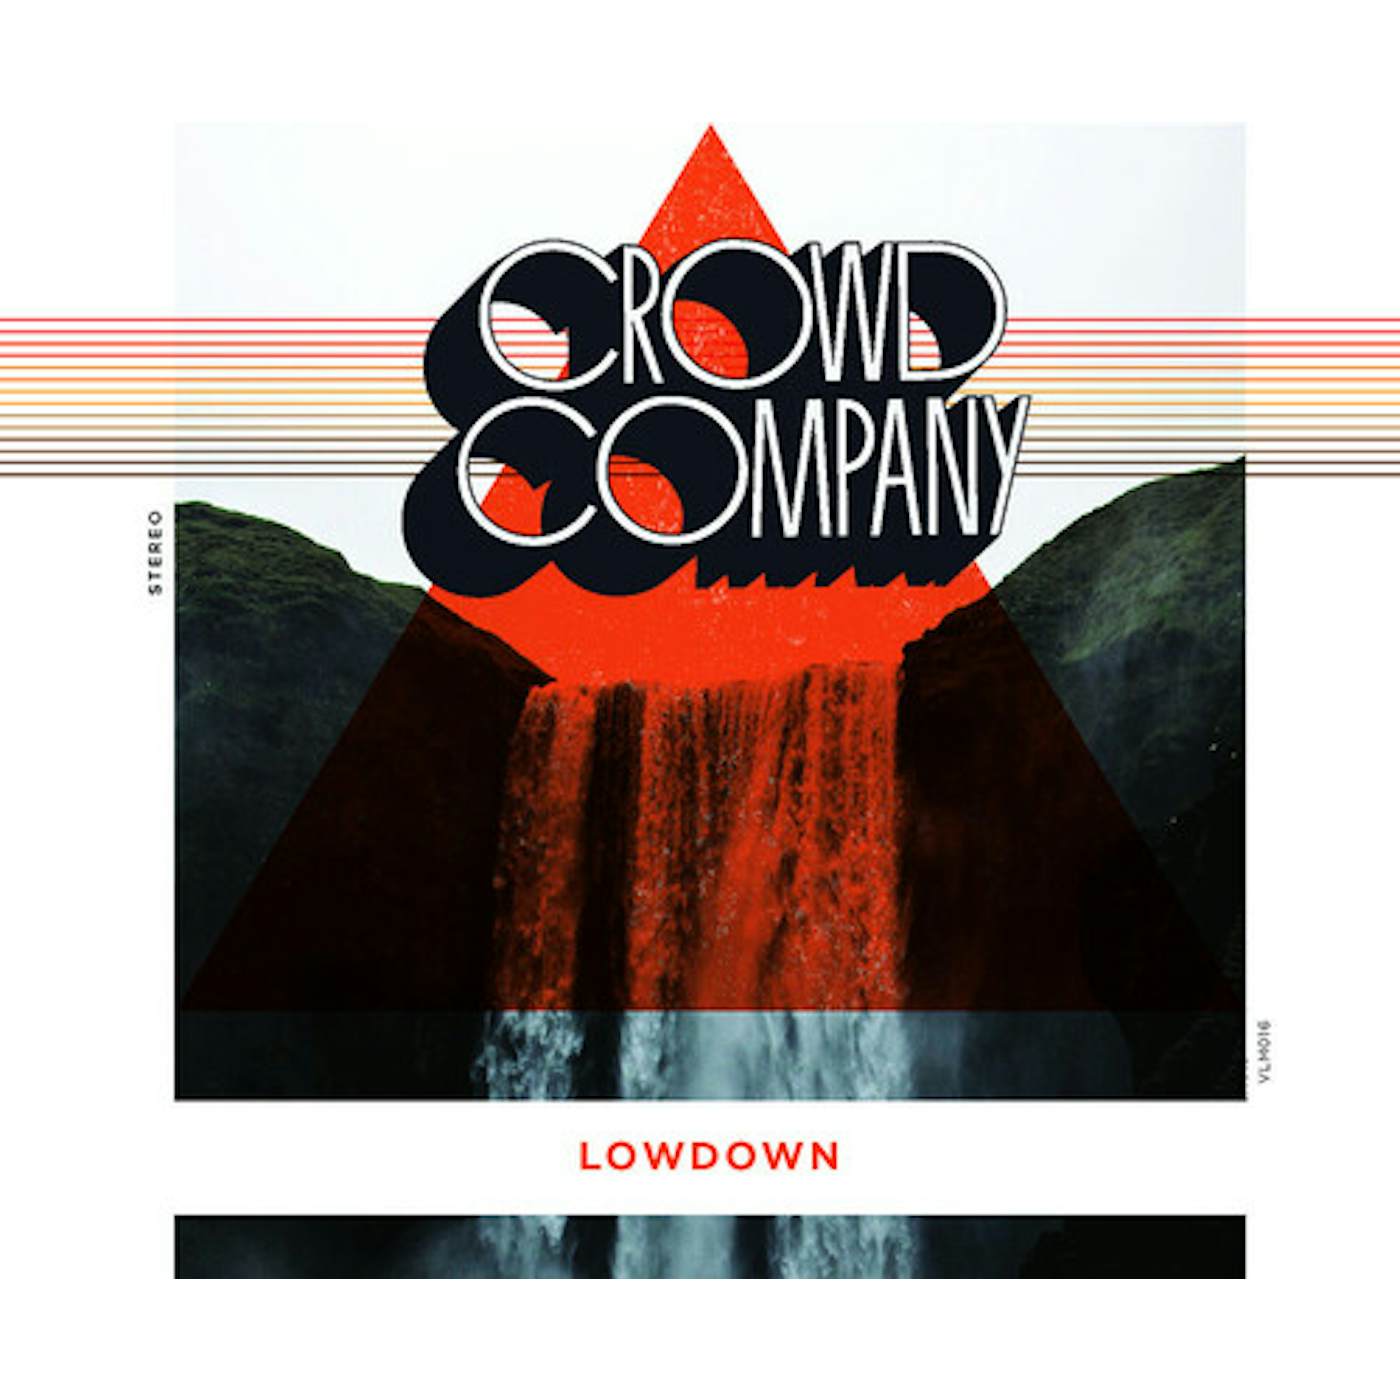 Crowd Company LOWDOWN CD